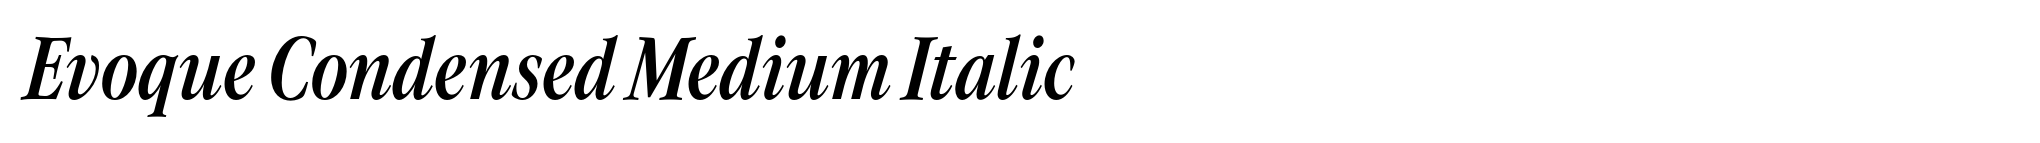 Evoque Condensed Medium Italic image